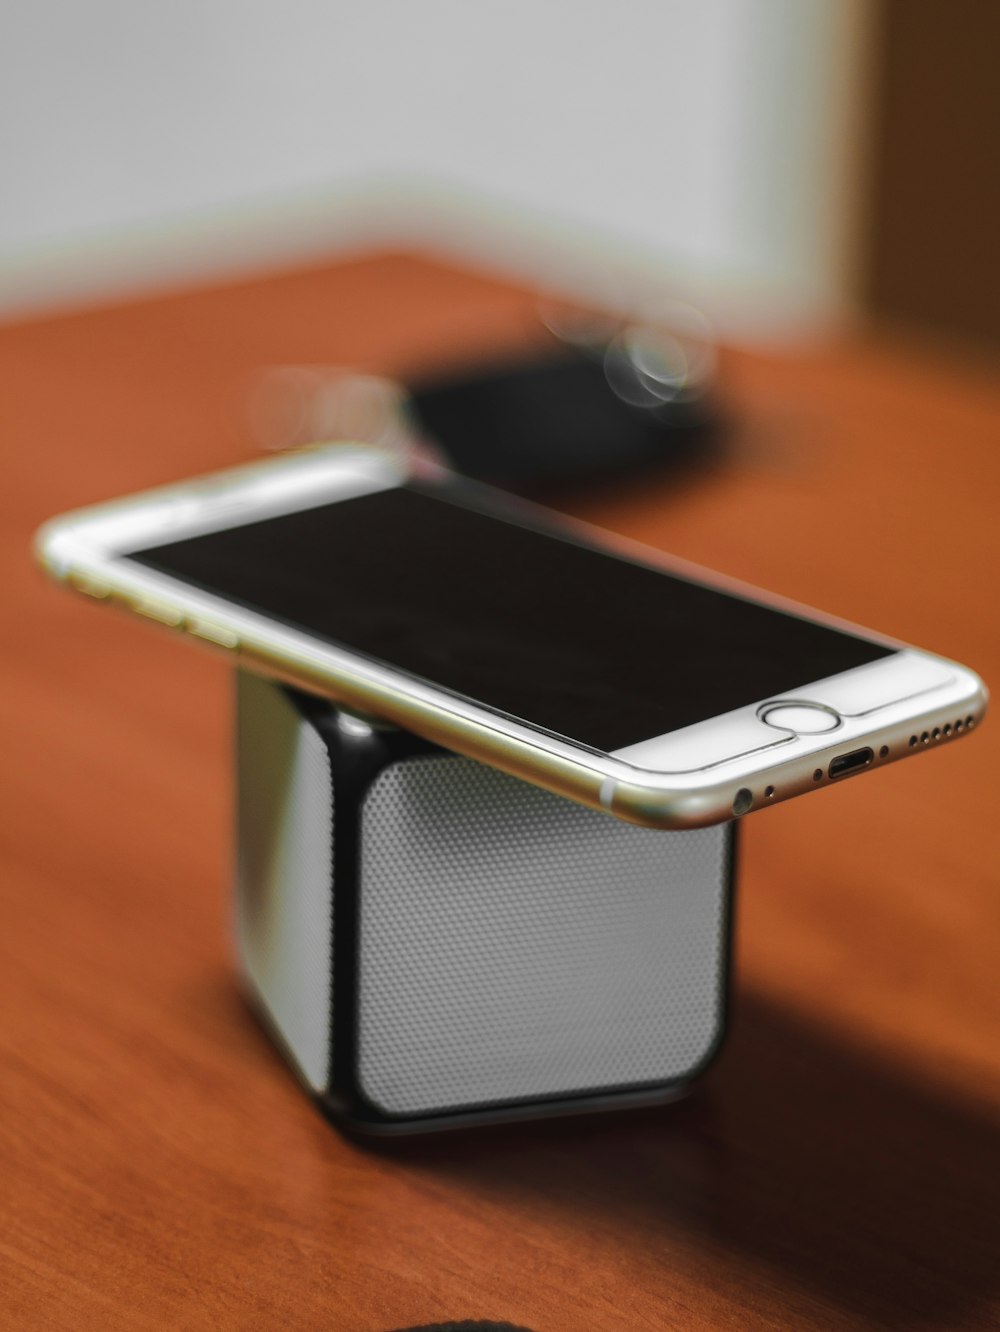 블루투스 휴대용 스피커 위에 골드 아이폰 6